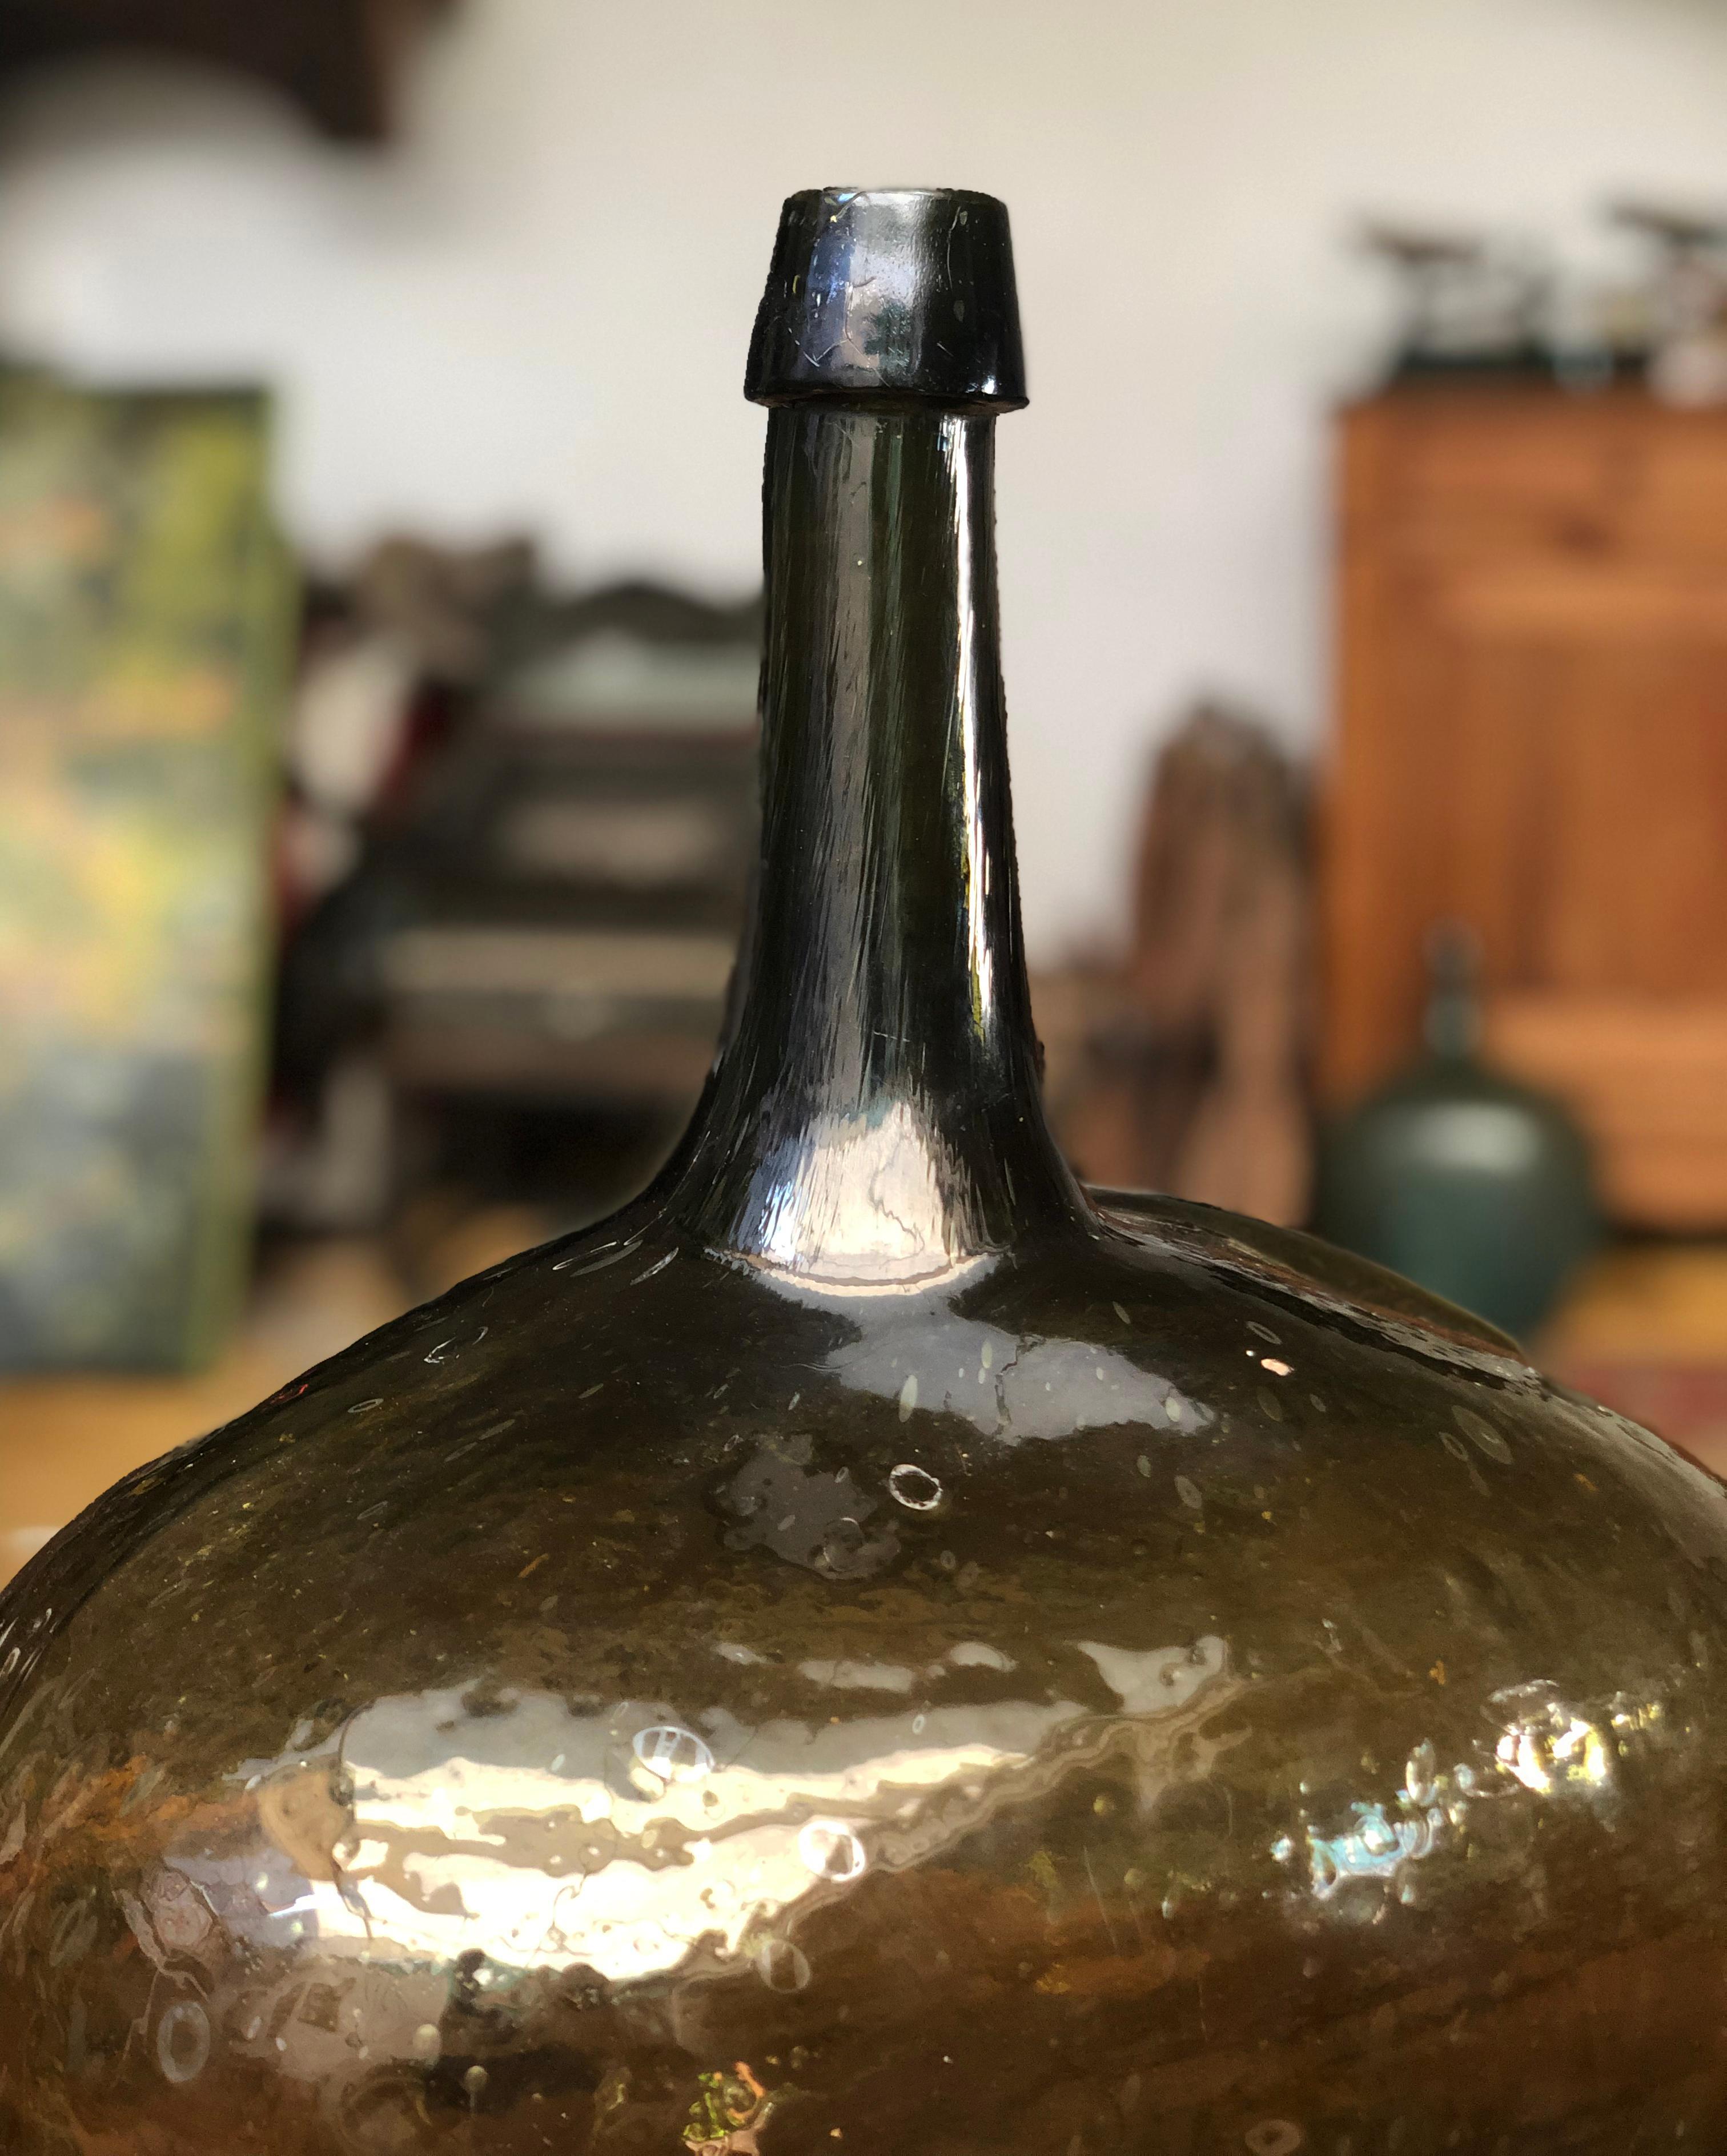 vintage demijohn bottles